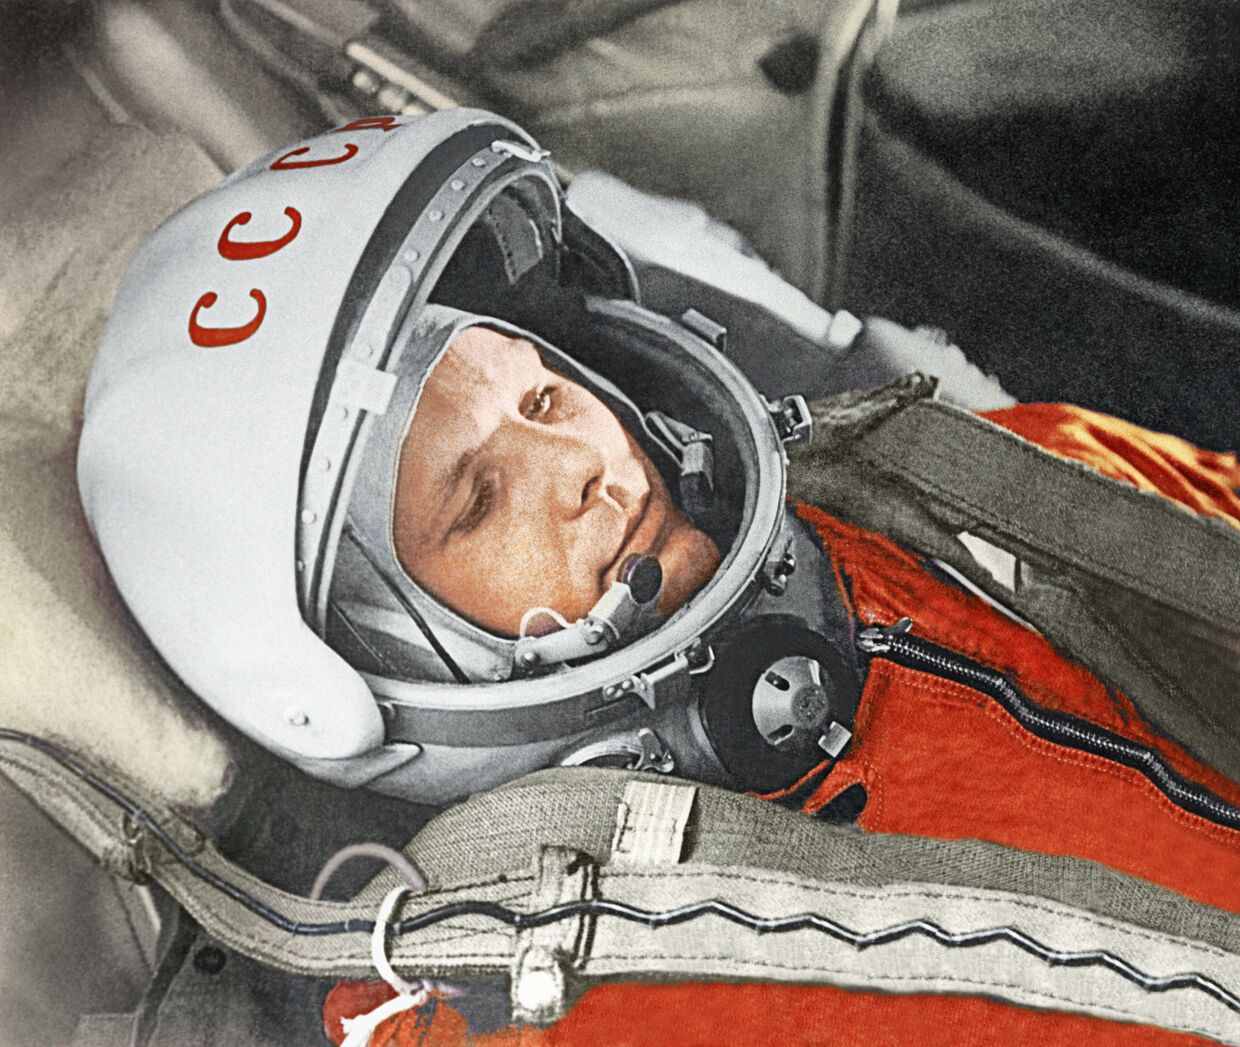 Юрий Гагарин в кабине космического корабля “Восток”